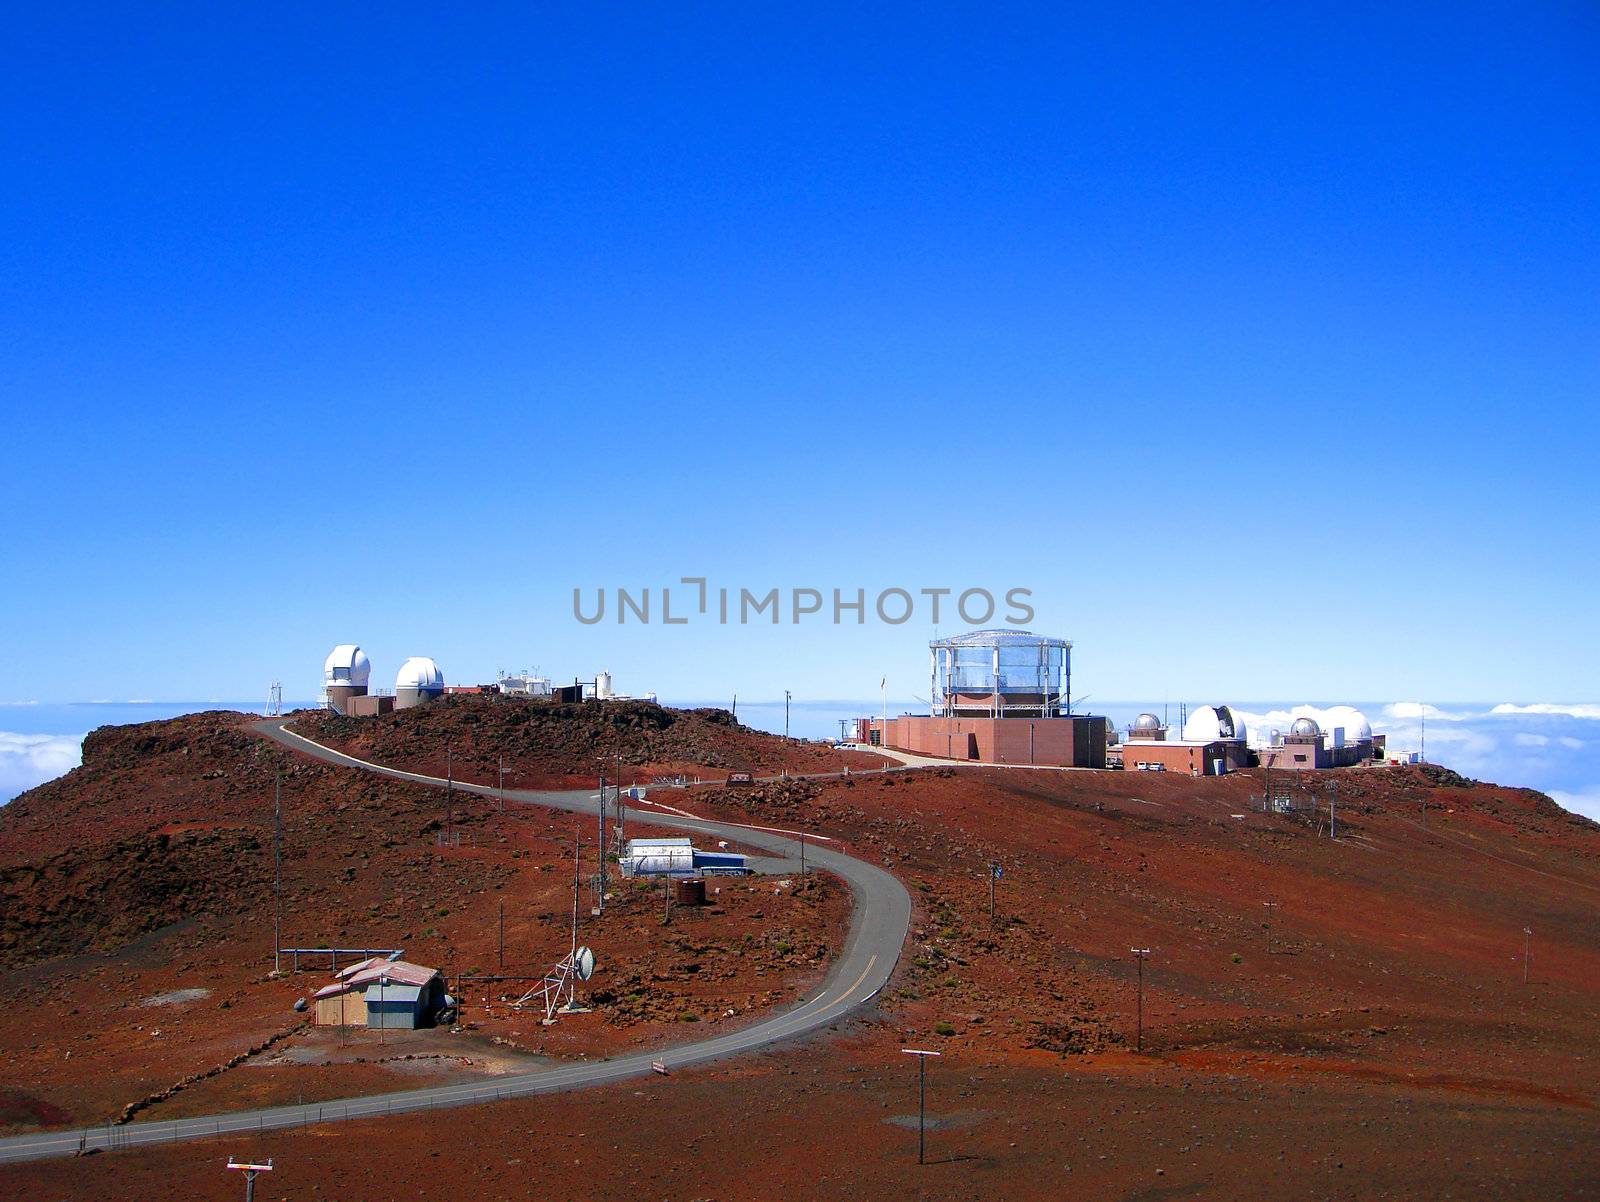 Ground-based Telescopes on the summit of Haleakala, Maui, Hawaii